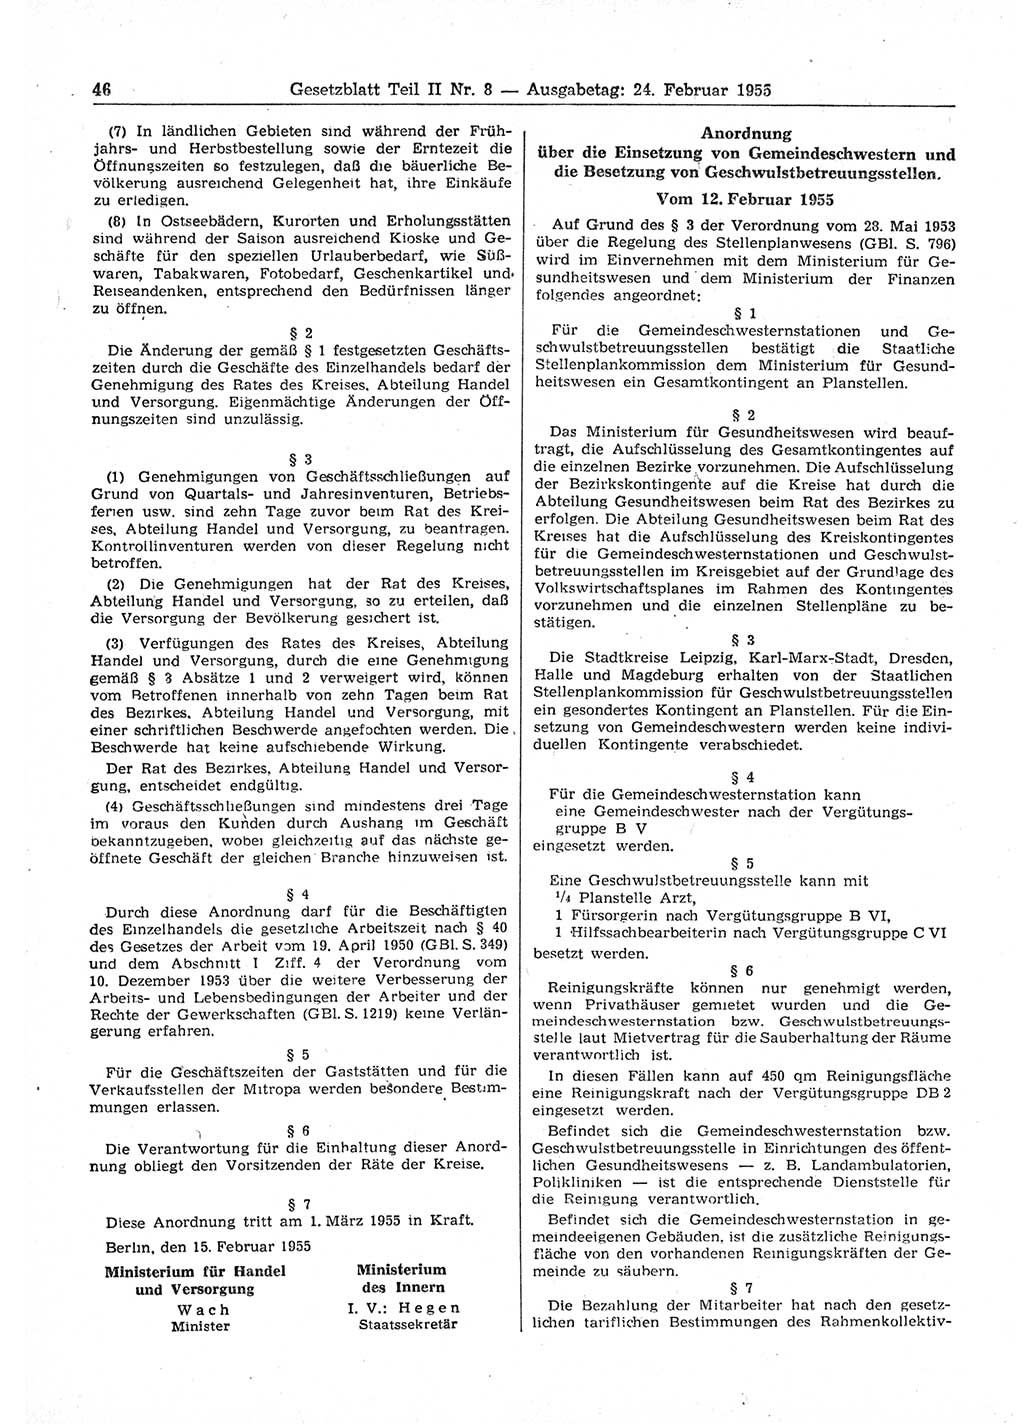 Gesetzblatt (GBl.) der Deutschen Demokratischen Republik (DDR) Teil ⅠⅠ 1955, Seite 46 (GBl. DDR ⅠⅠ 1955, S. 46)